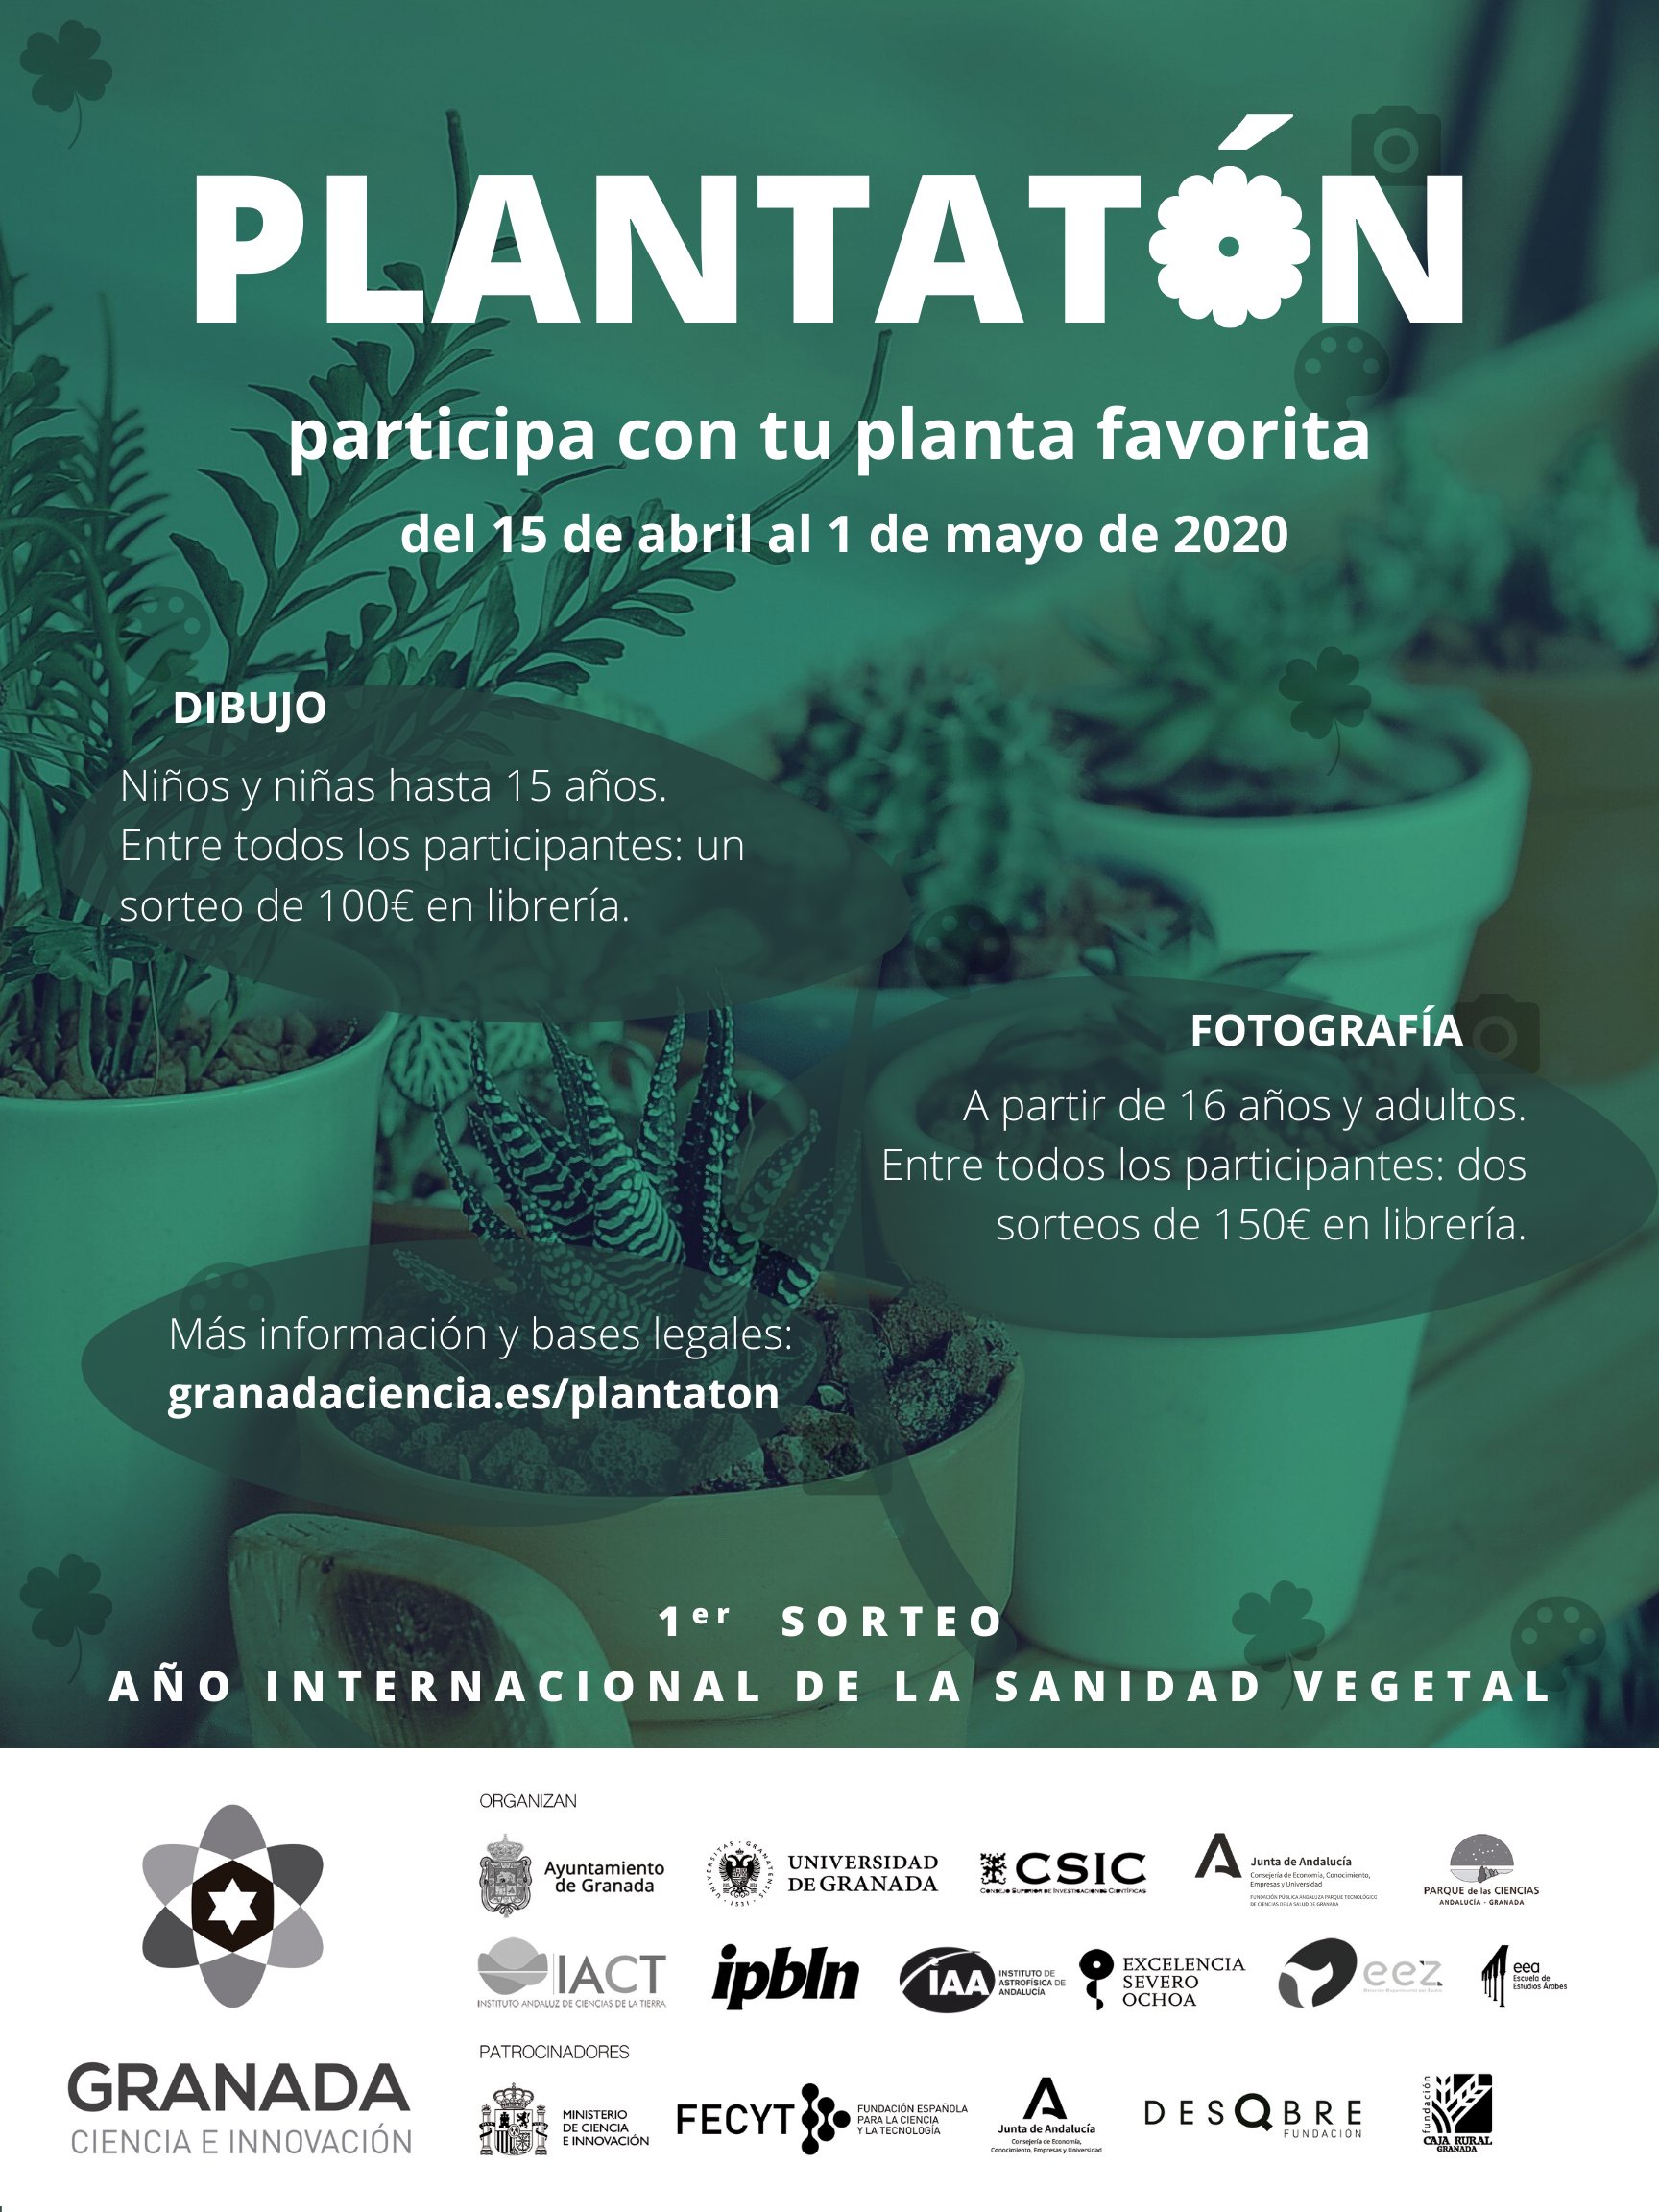 El proyecto Granada Ciudad de la Ciencia crea “Plantatón”, un concurso on-line de fotografía y dibujo sobre plantas para alegrar la cuarentena